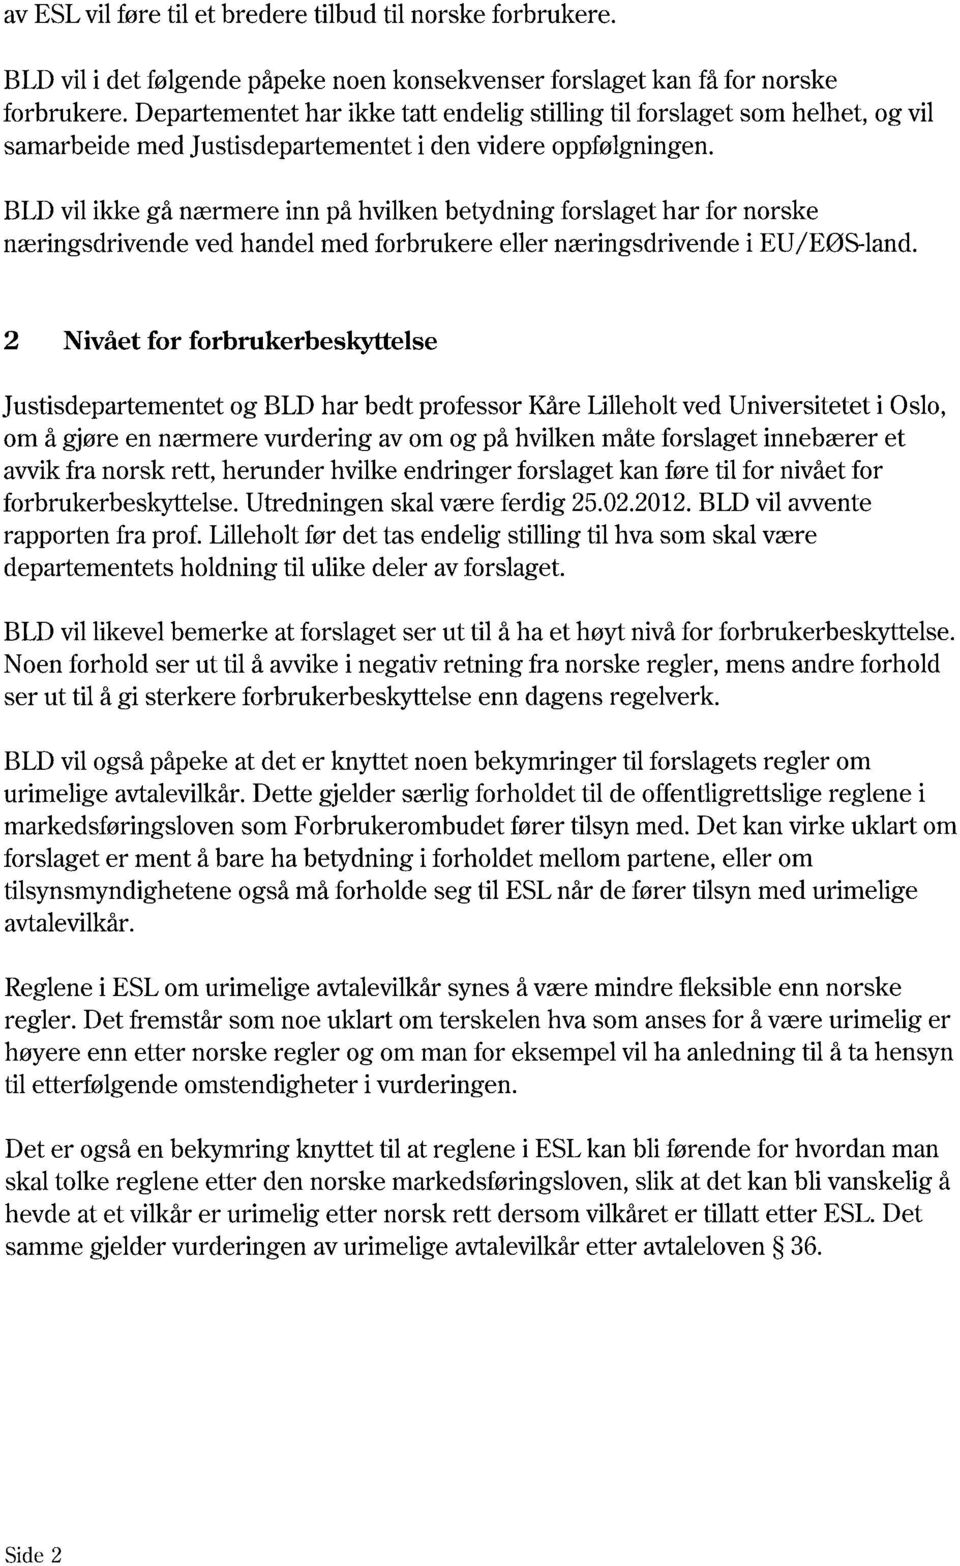 BLD vil ikke gå nærmere inn på hvilken betydning forslaget har for norske næringsdrivende ved handel med forbrukere eller næringsdrivende i EU/EØS-land.